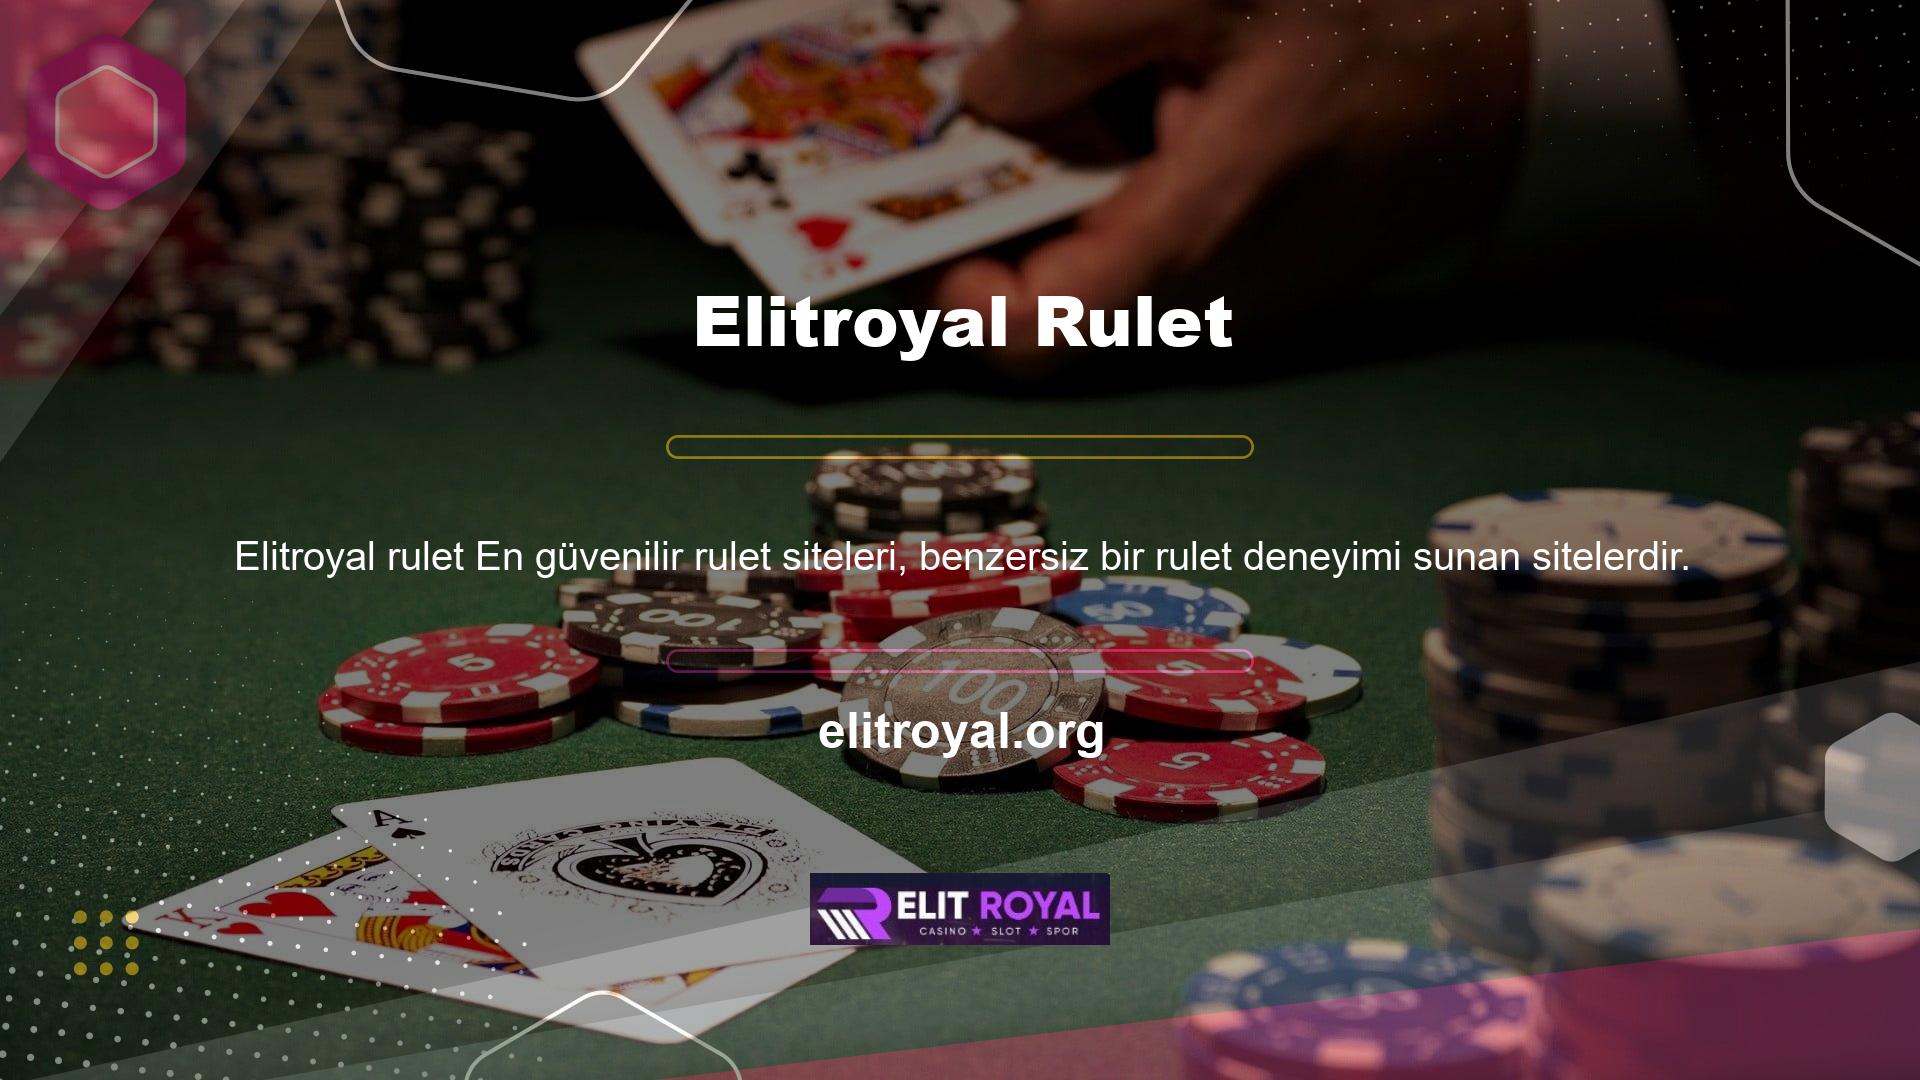 Rulet, Fransa'da en çok oynanan şans oyunudur